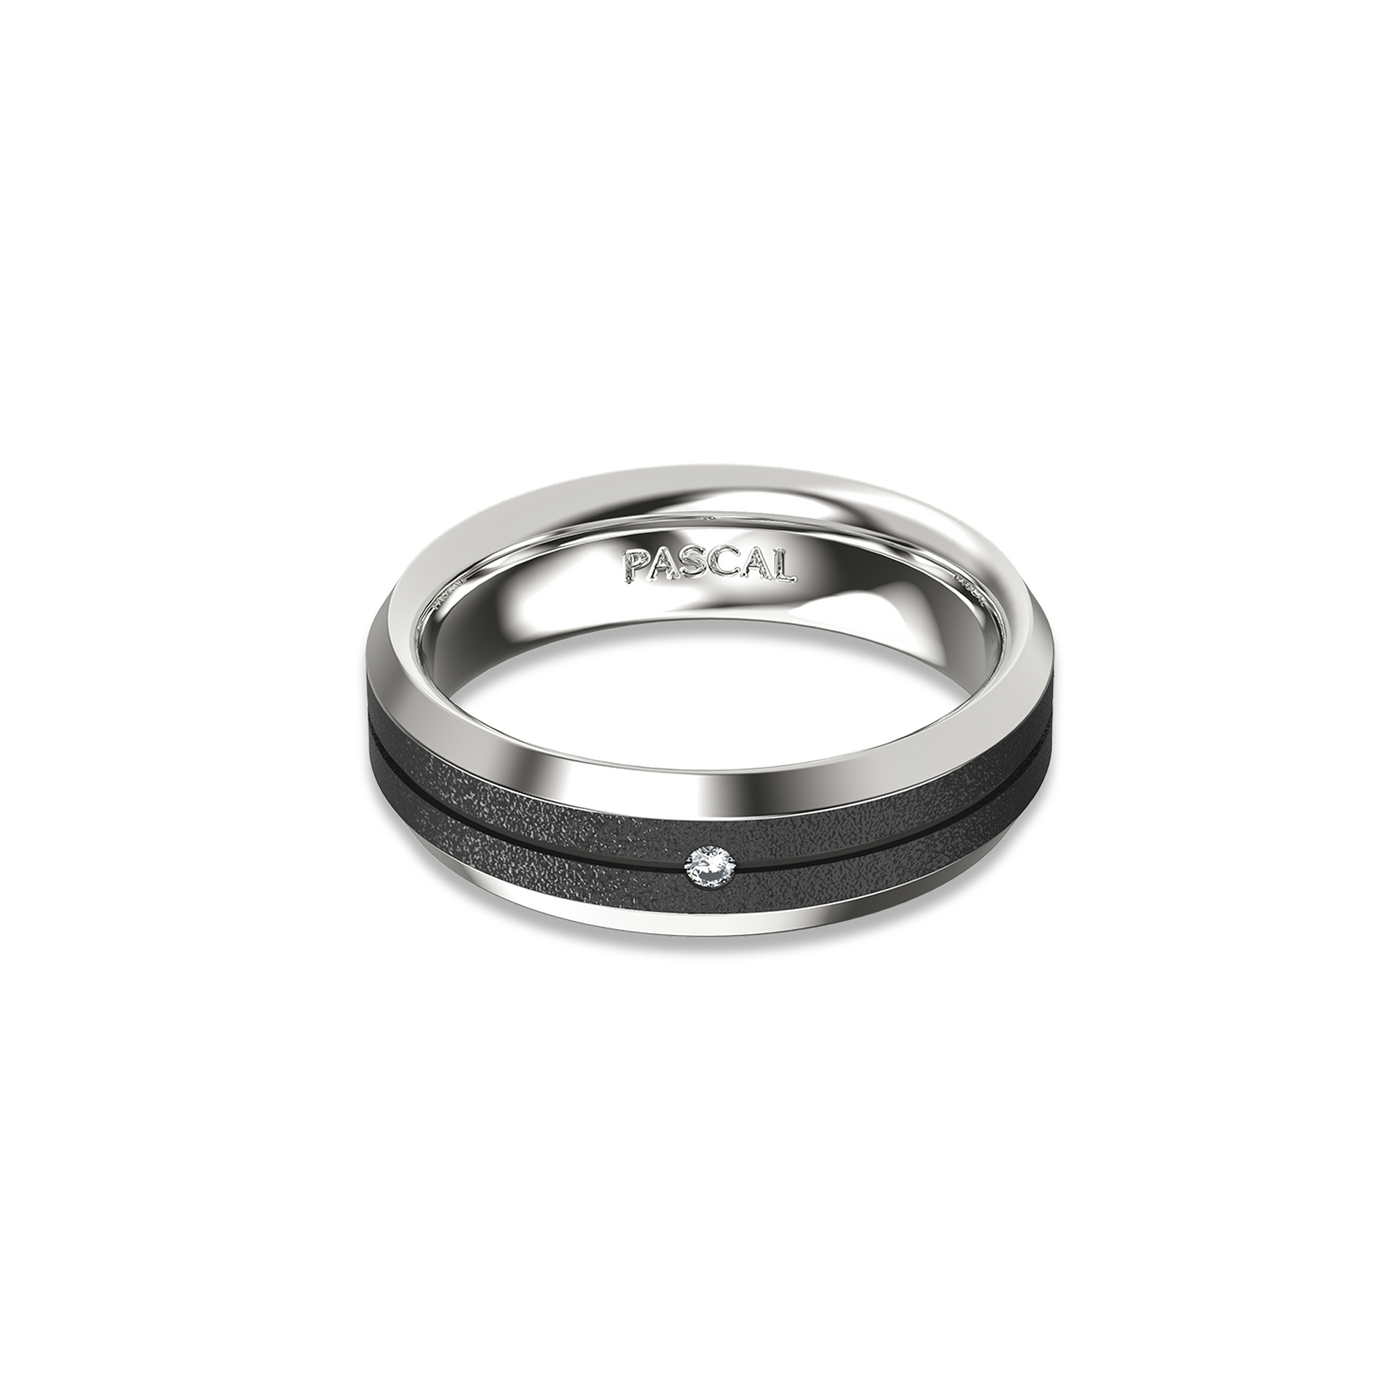 Beveled Diamond Band Ring